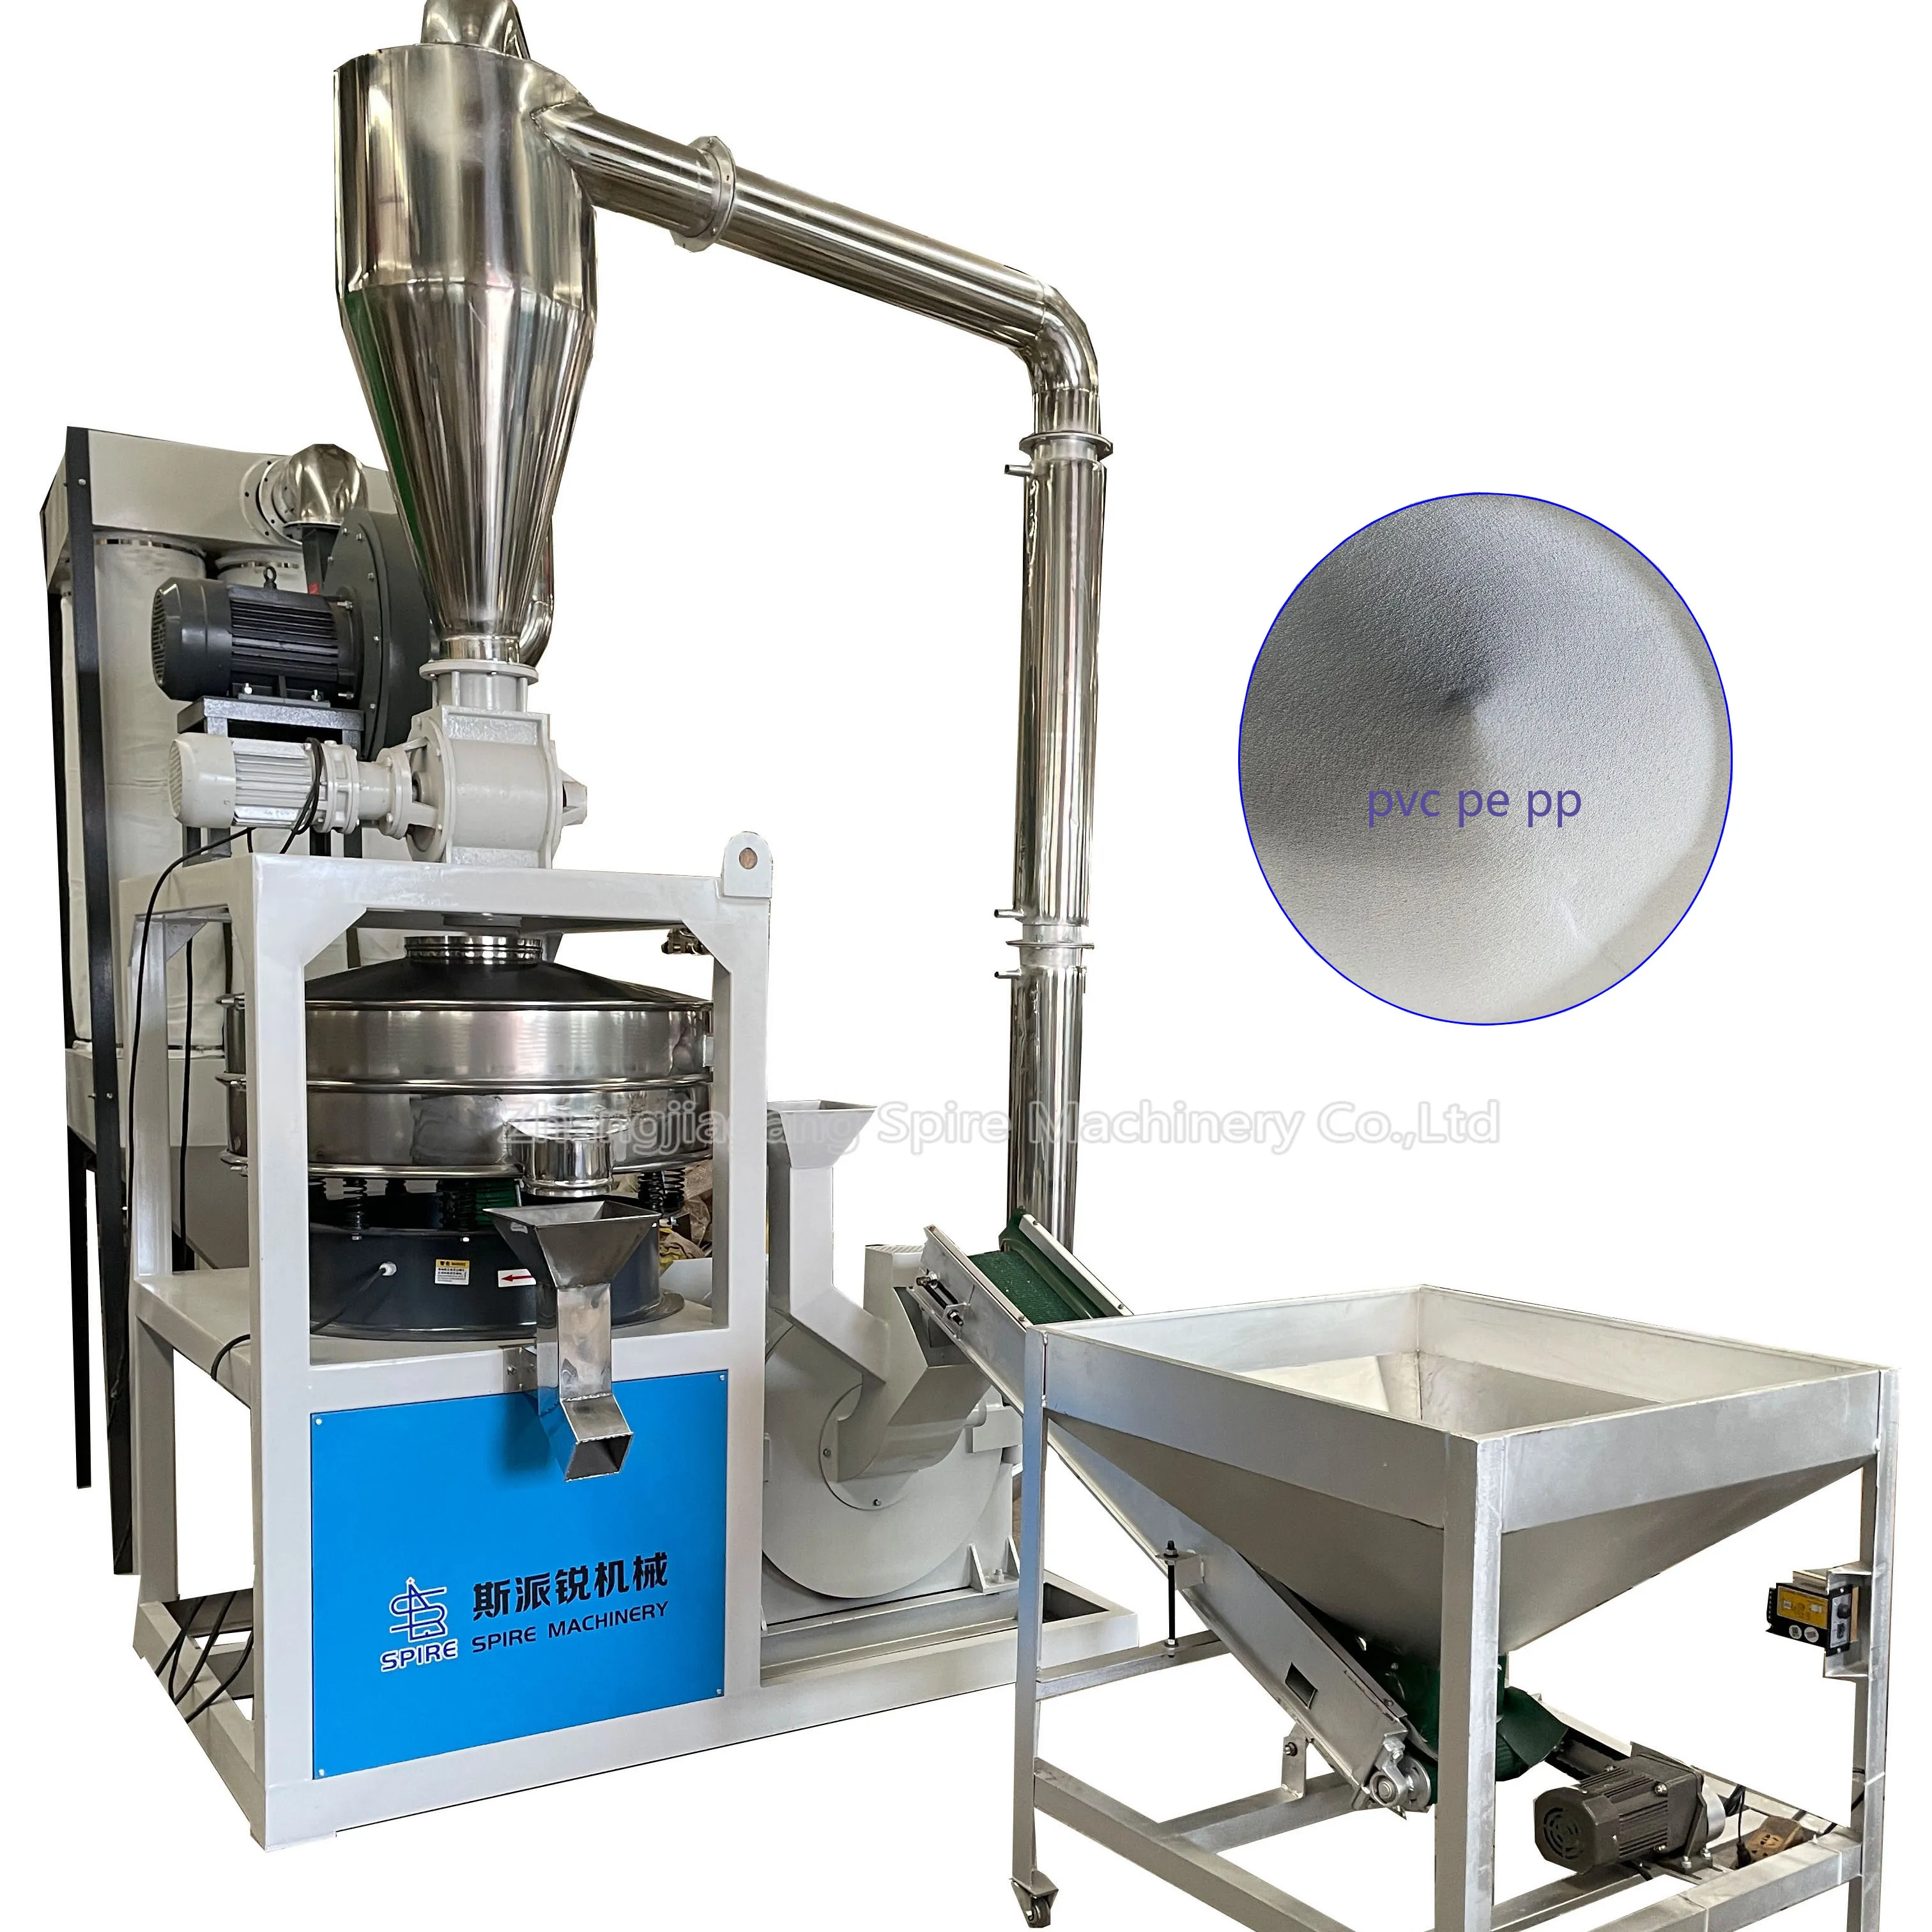 Máquina de fresado de plástico, pulverizador de PVC duradero y de alta calidad, venta al por mayor China